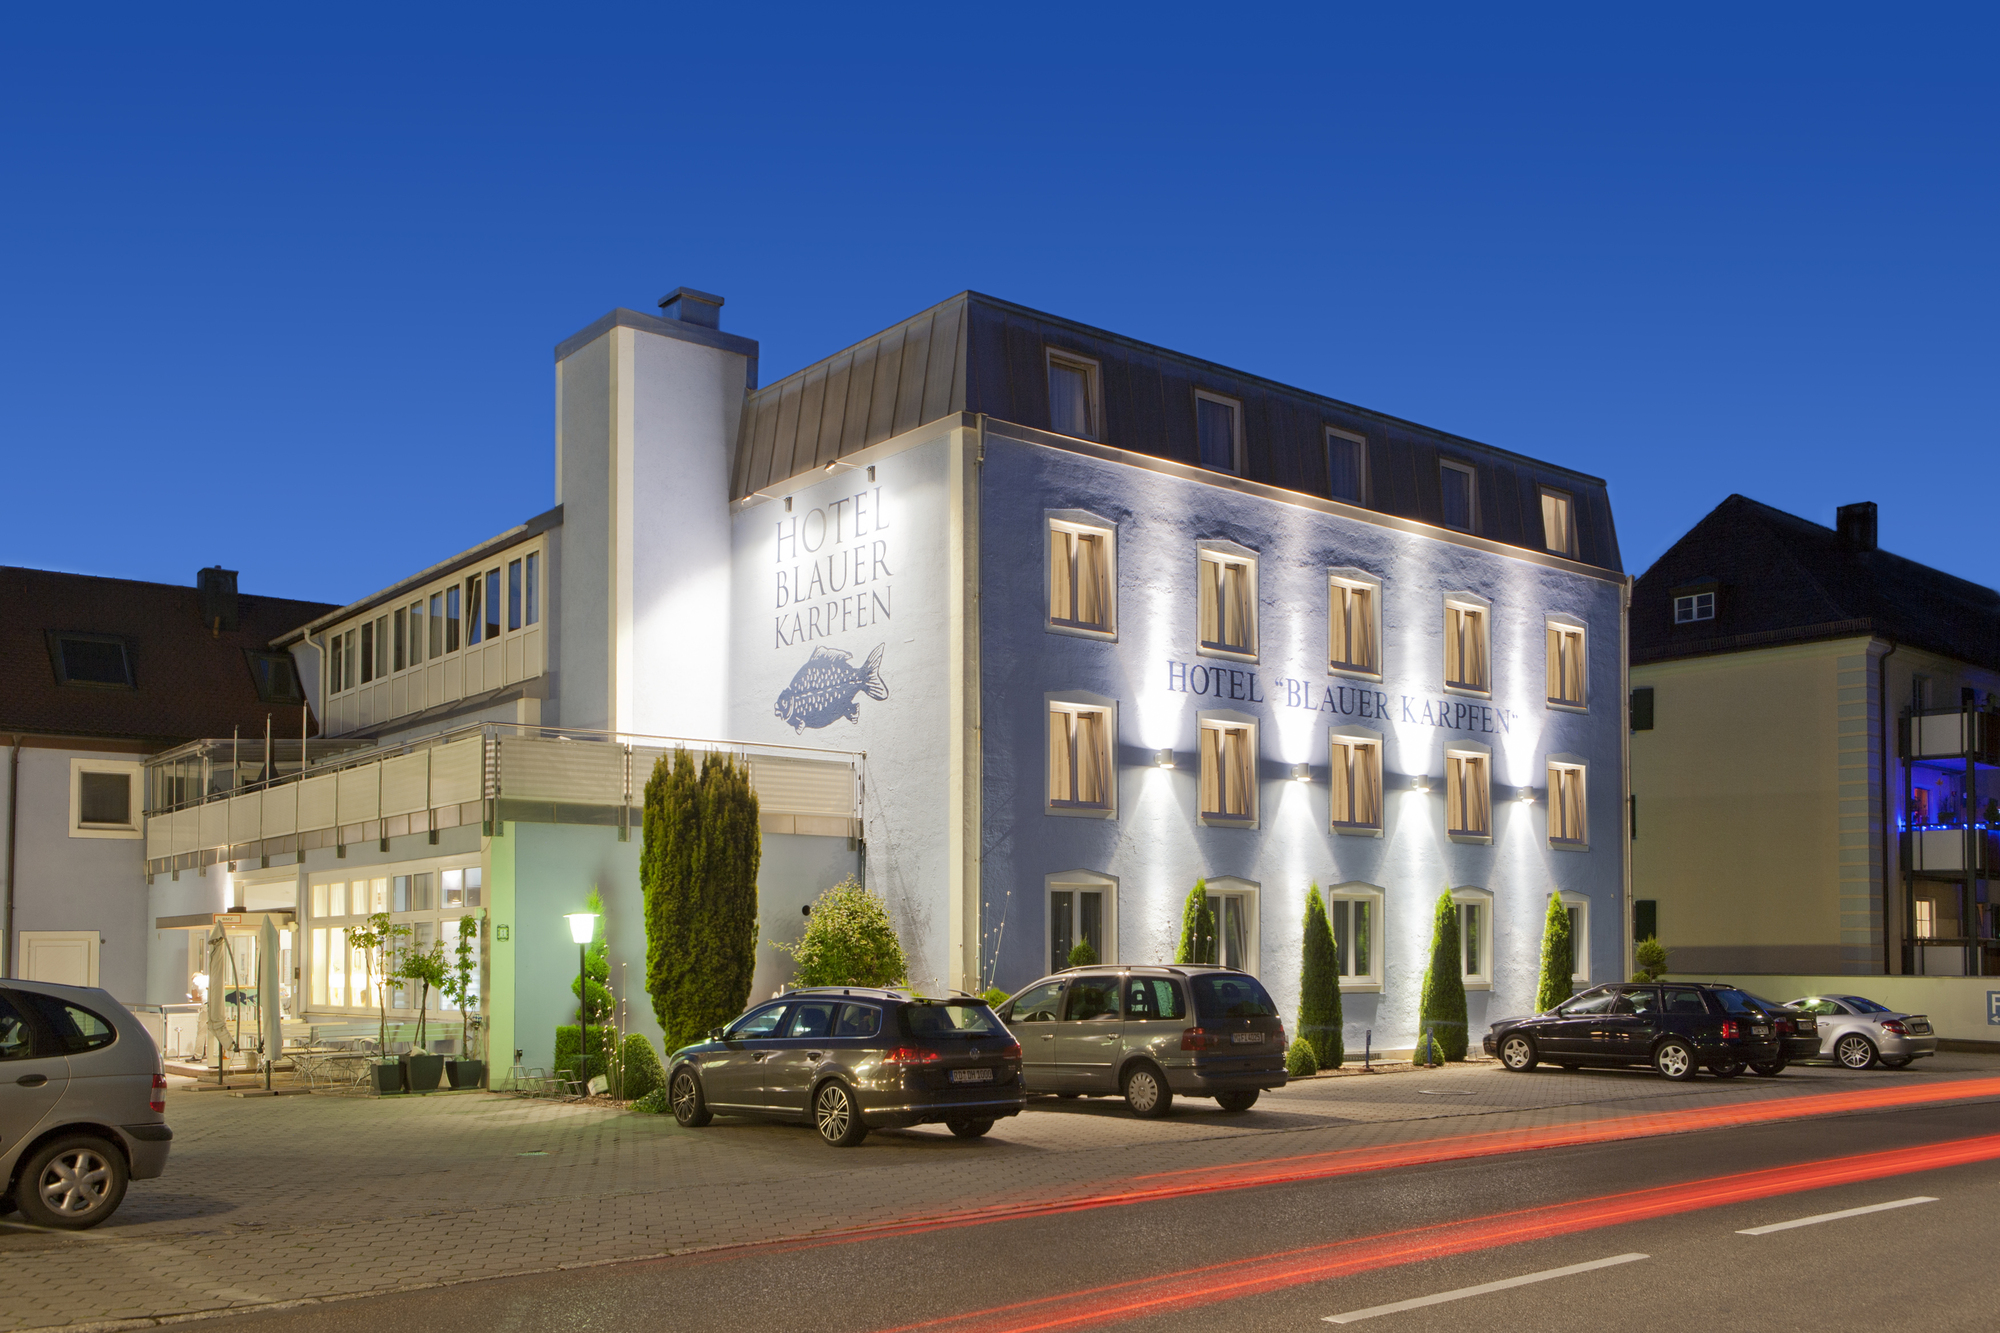 Das Fussball Hotel blauer Karpfen, Oberschleißheim bei München